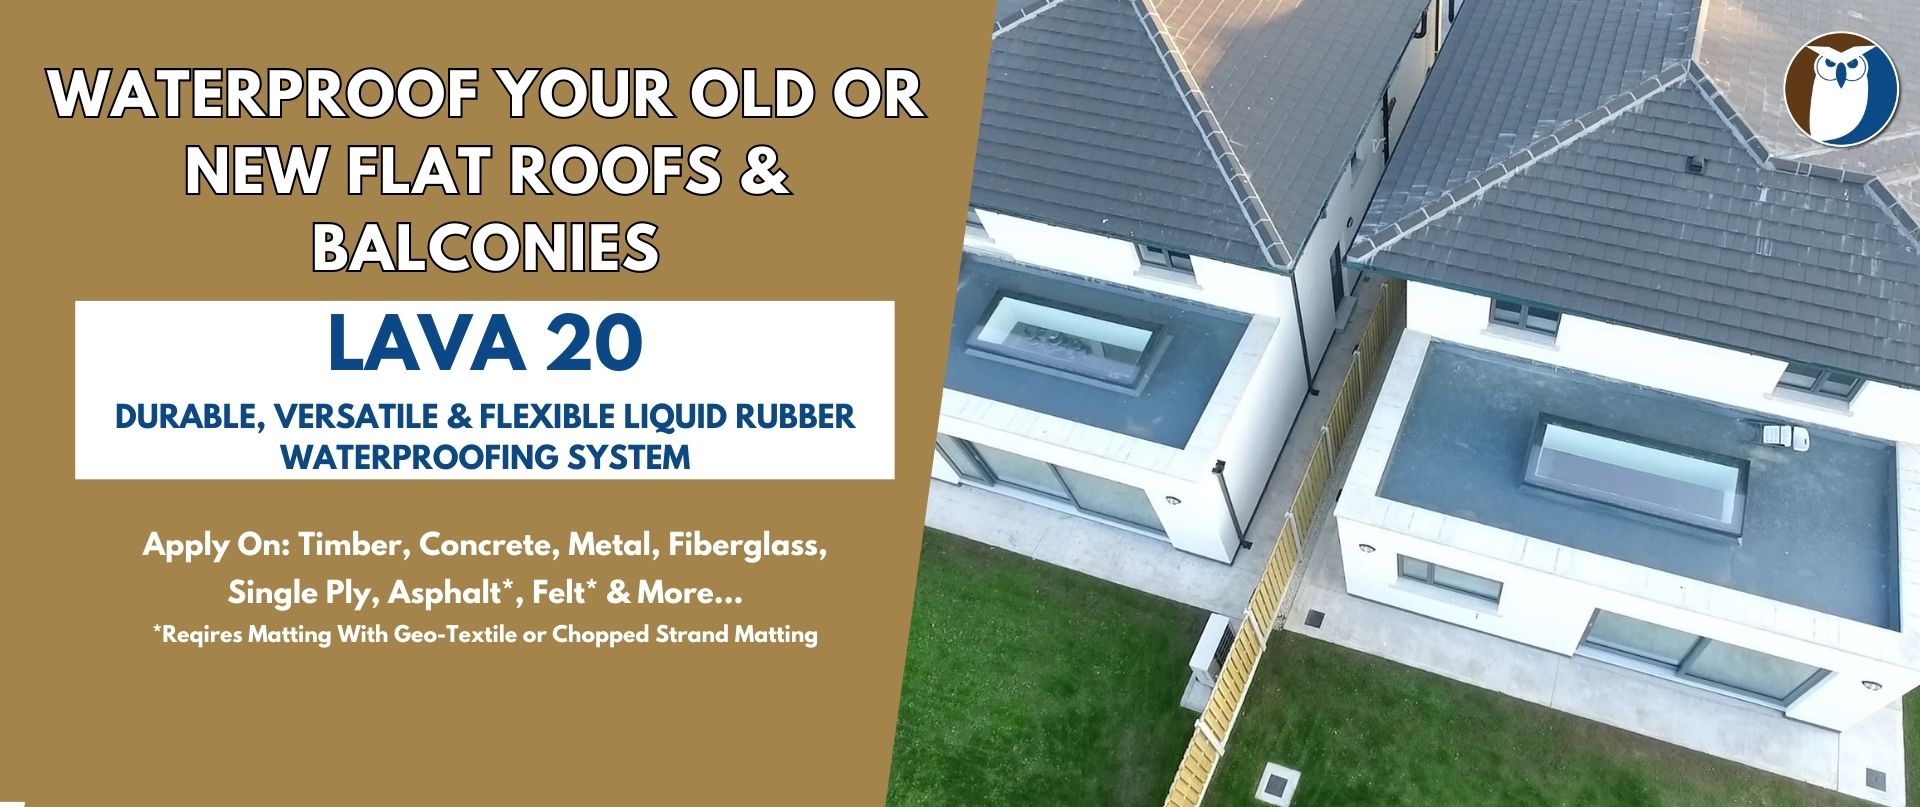 Roofing & Waterproofing